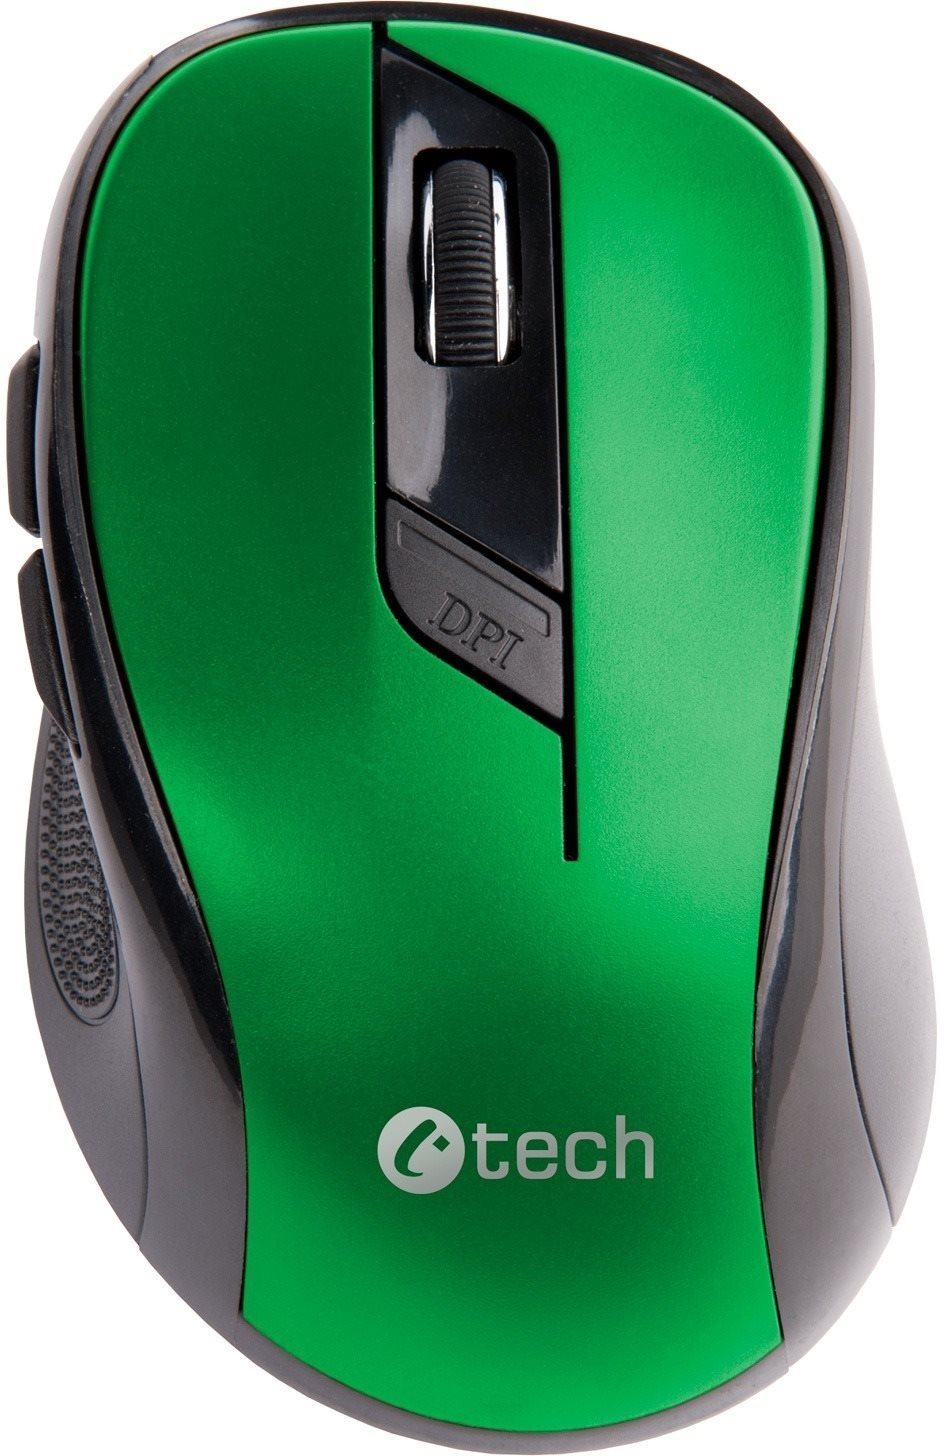 C-TECH egér WLM-02, fekete-zöld, vezeték nélküli, 1600DPI, 6 gomb, USB nano vevő